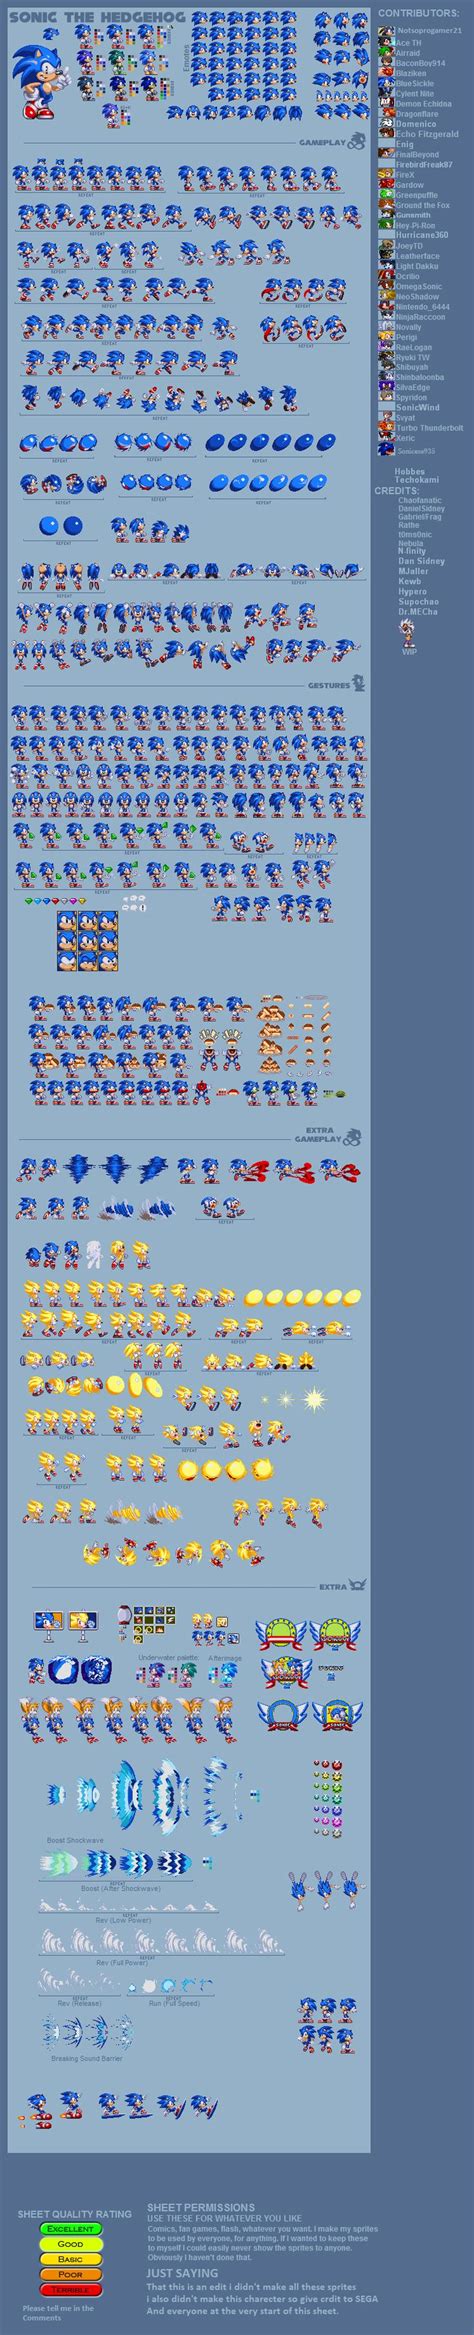 Modgen Modern Sonic Ultimate Sprite Sheet By Notsoprogamer21 On